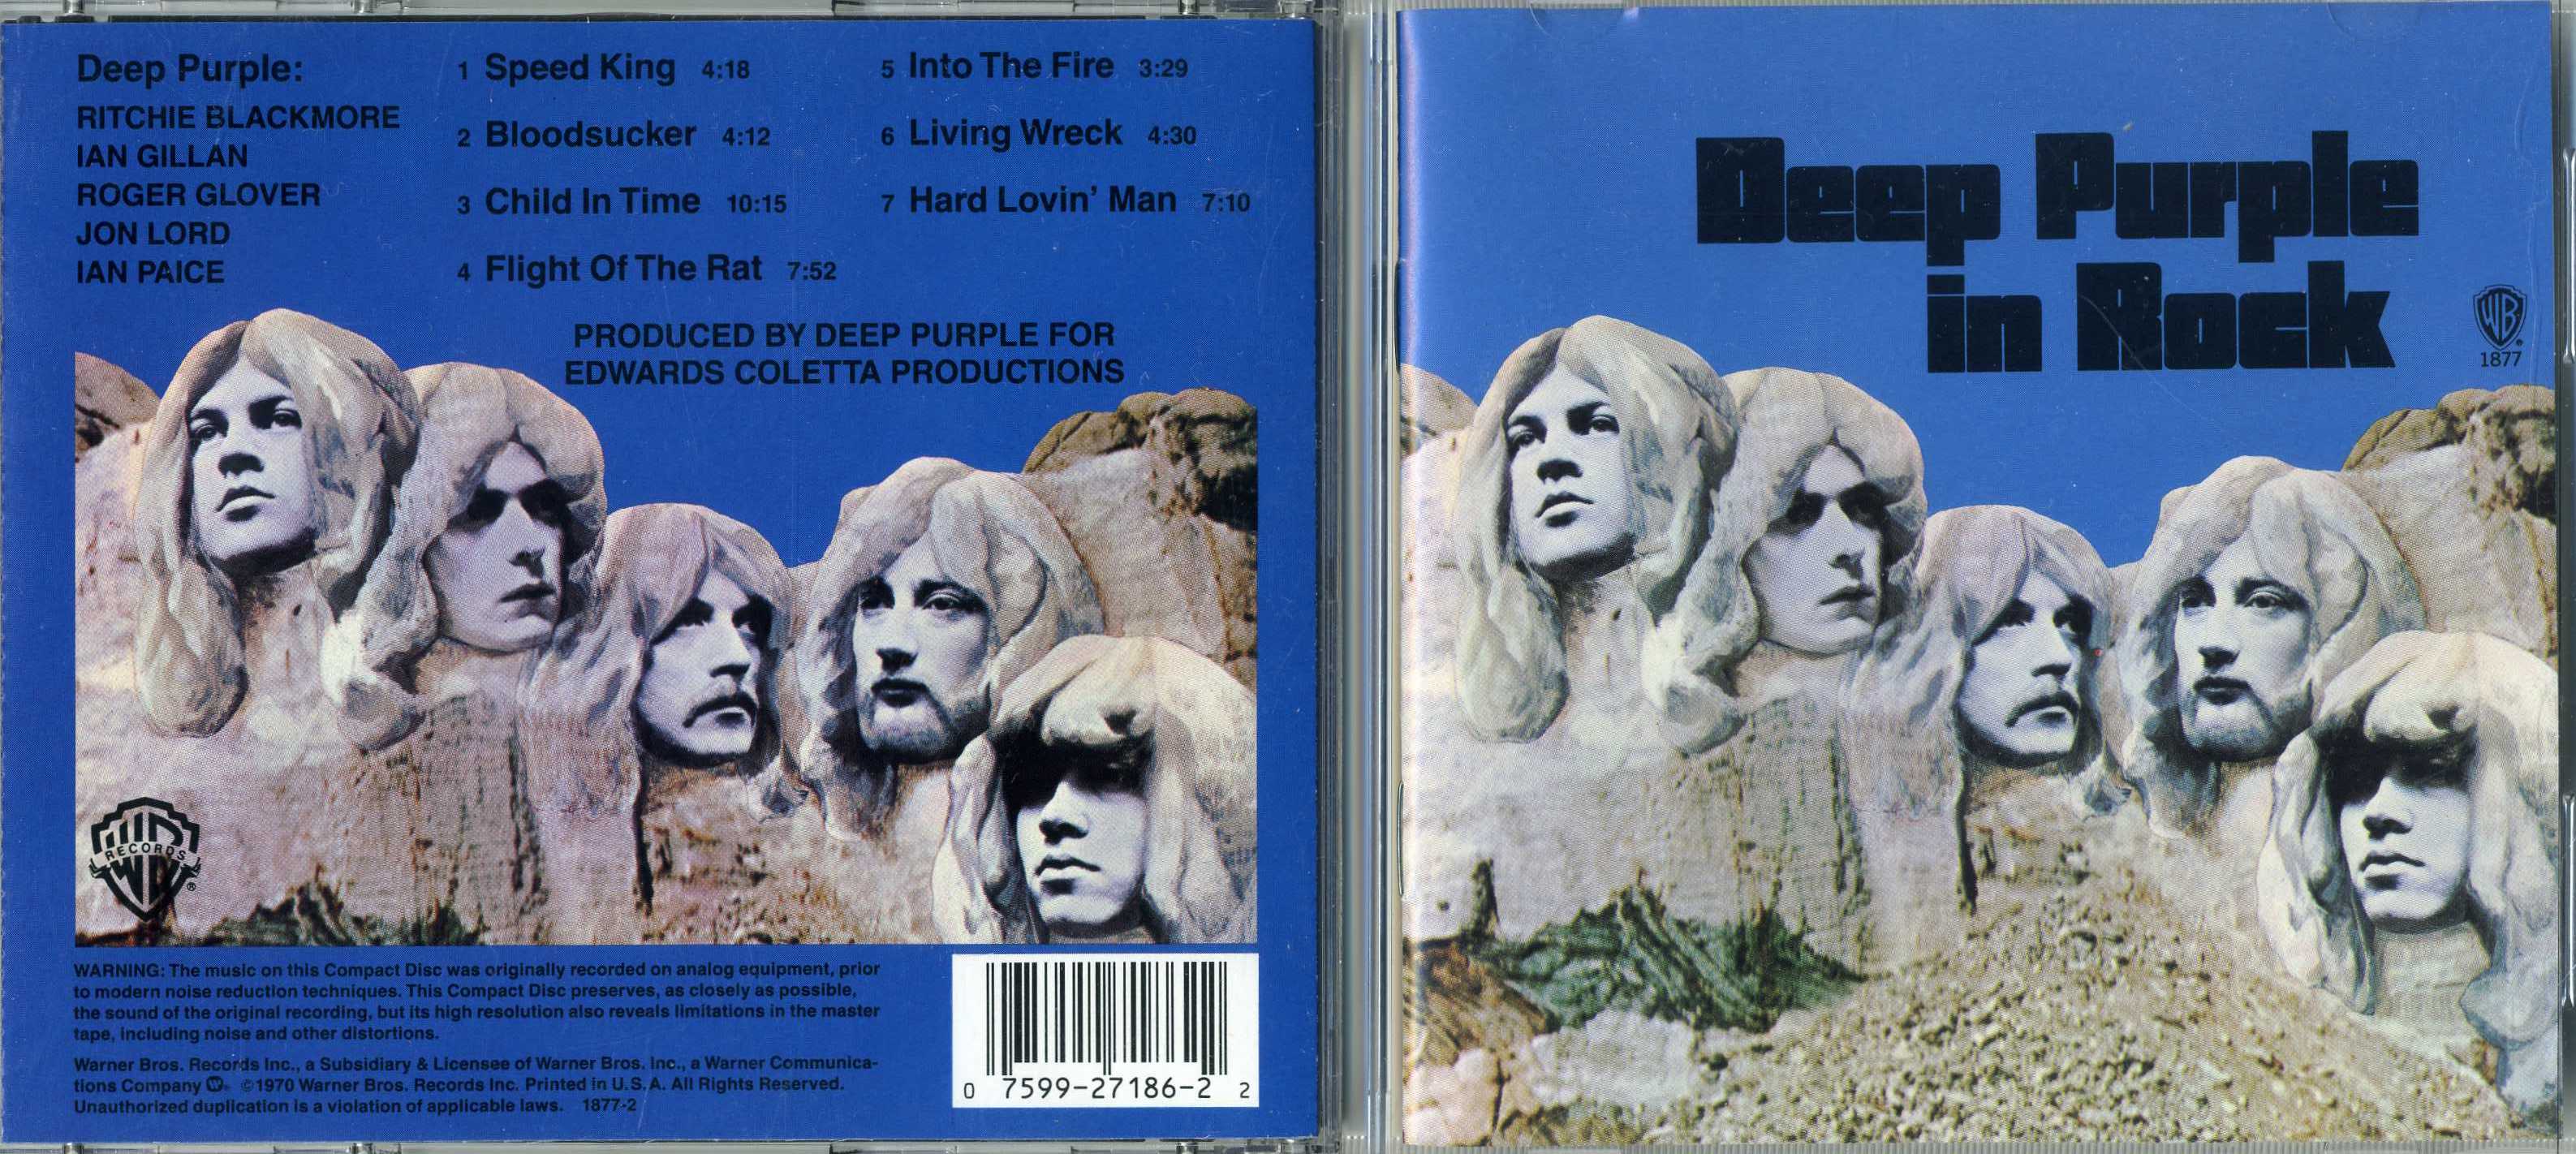 Дип перпл дитя. Обложка альбома дип перпл ин рок. Deep Purple in Rock 1970 LP. Deep Purple in Rock обложка. Deep Purple in Rock 1970 обложка.